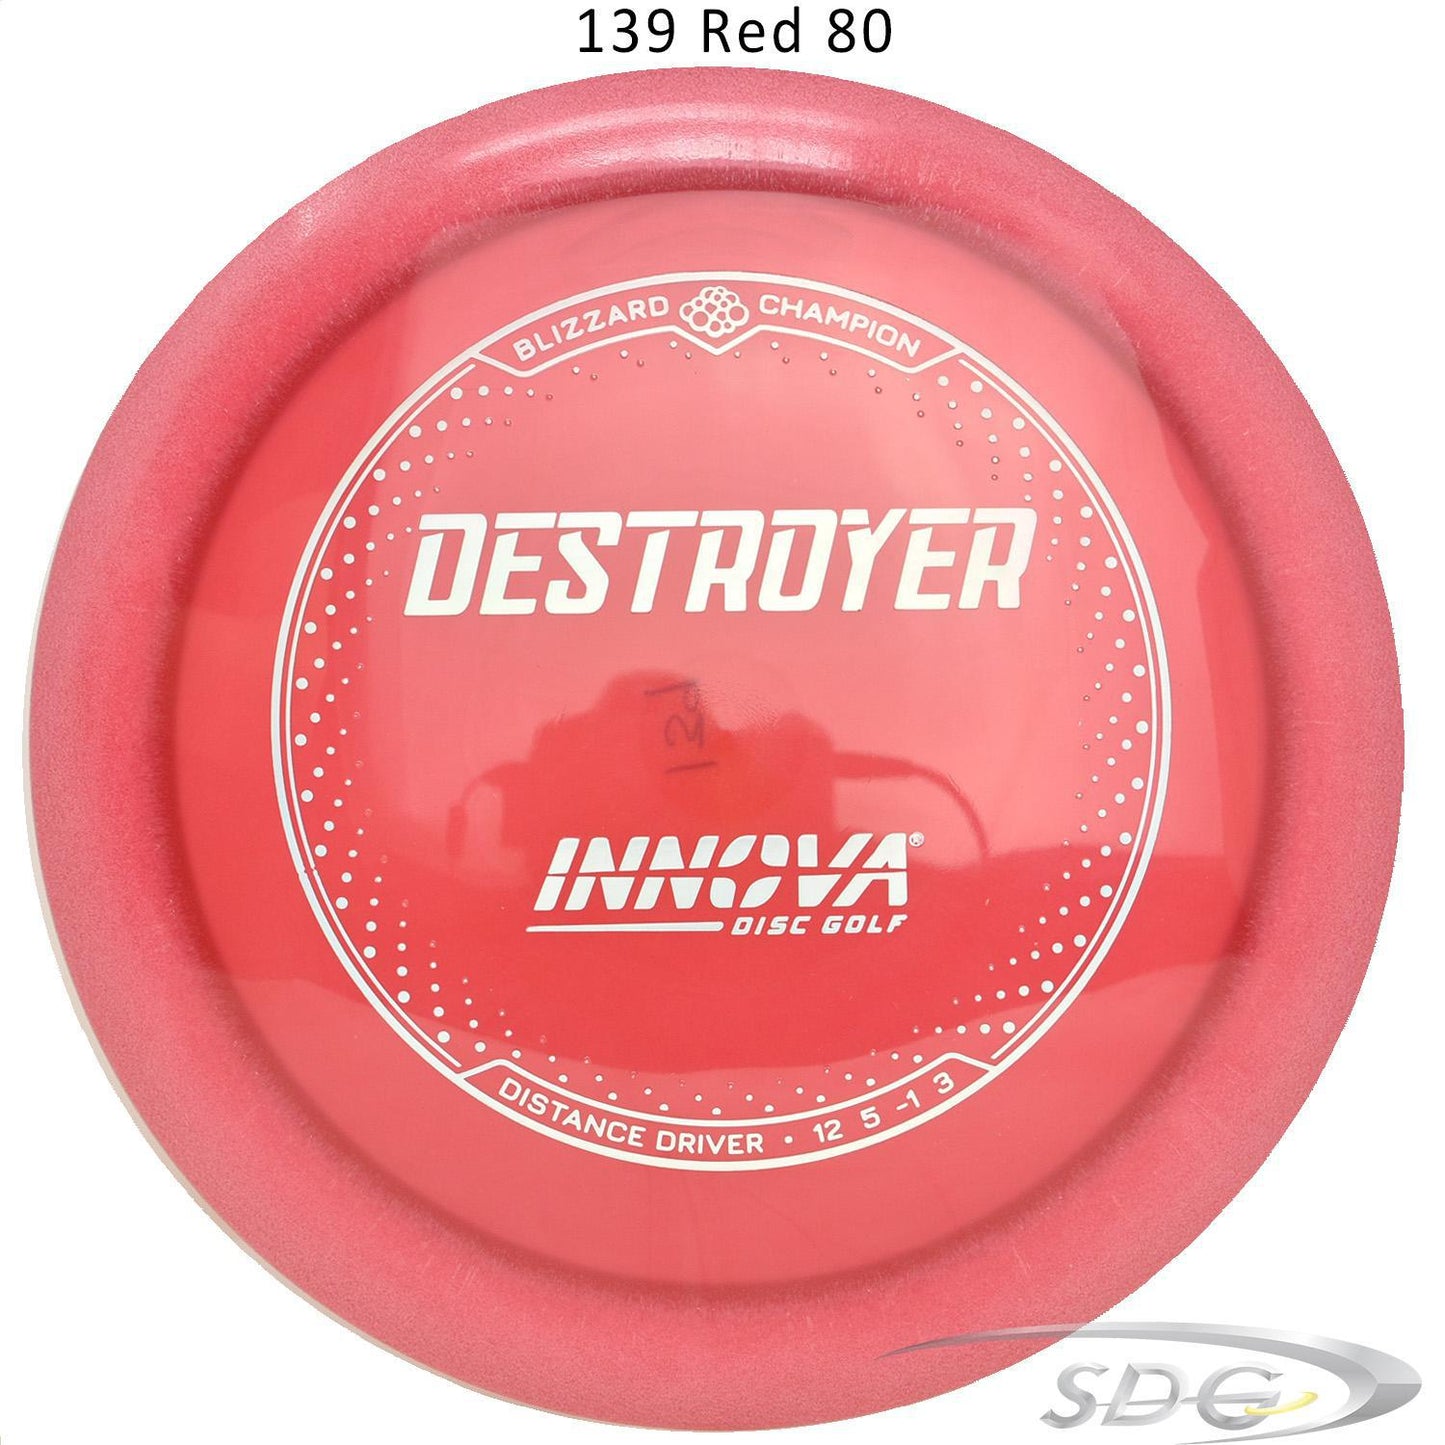 innova-blizzard-champion-destroyer-disc-golf-distance-driver 139 Red 80 